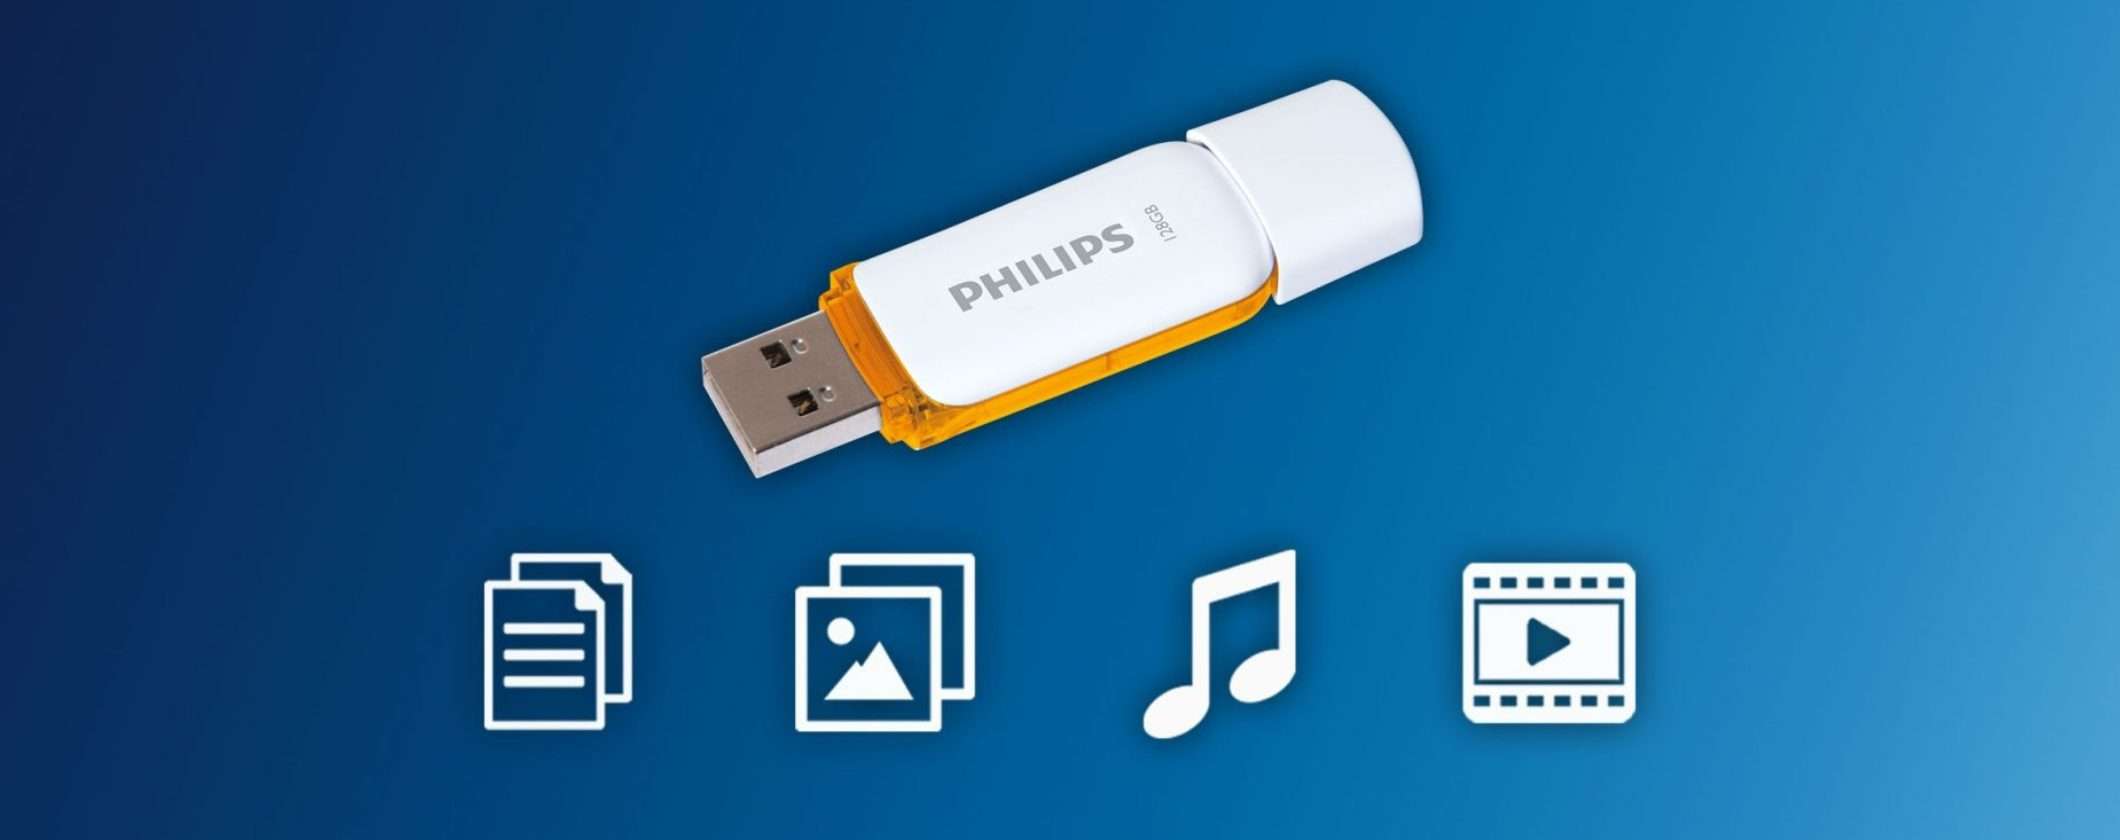 Chiavetta USB Philips 128GB a soli 10€: Amazon SVENDE tutto